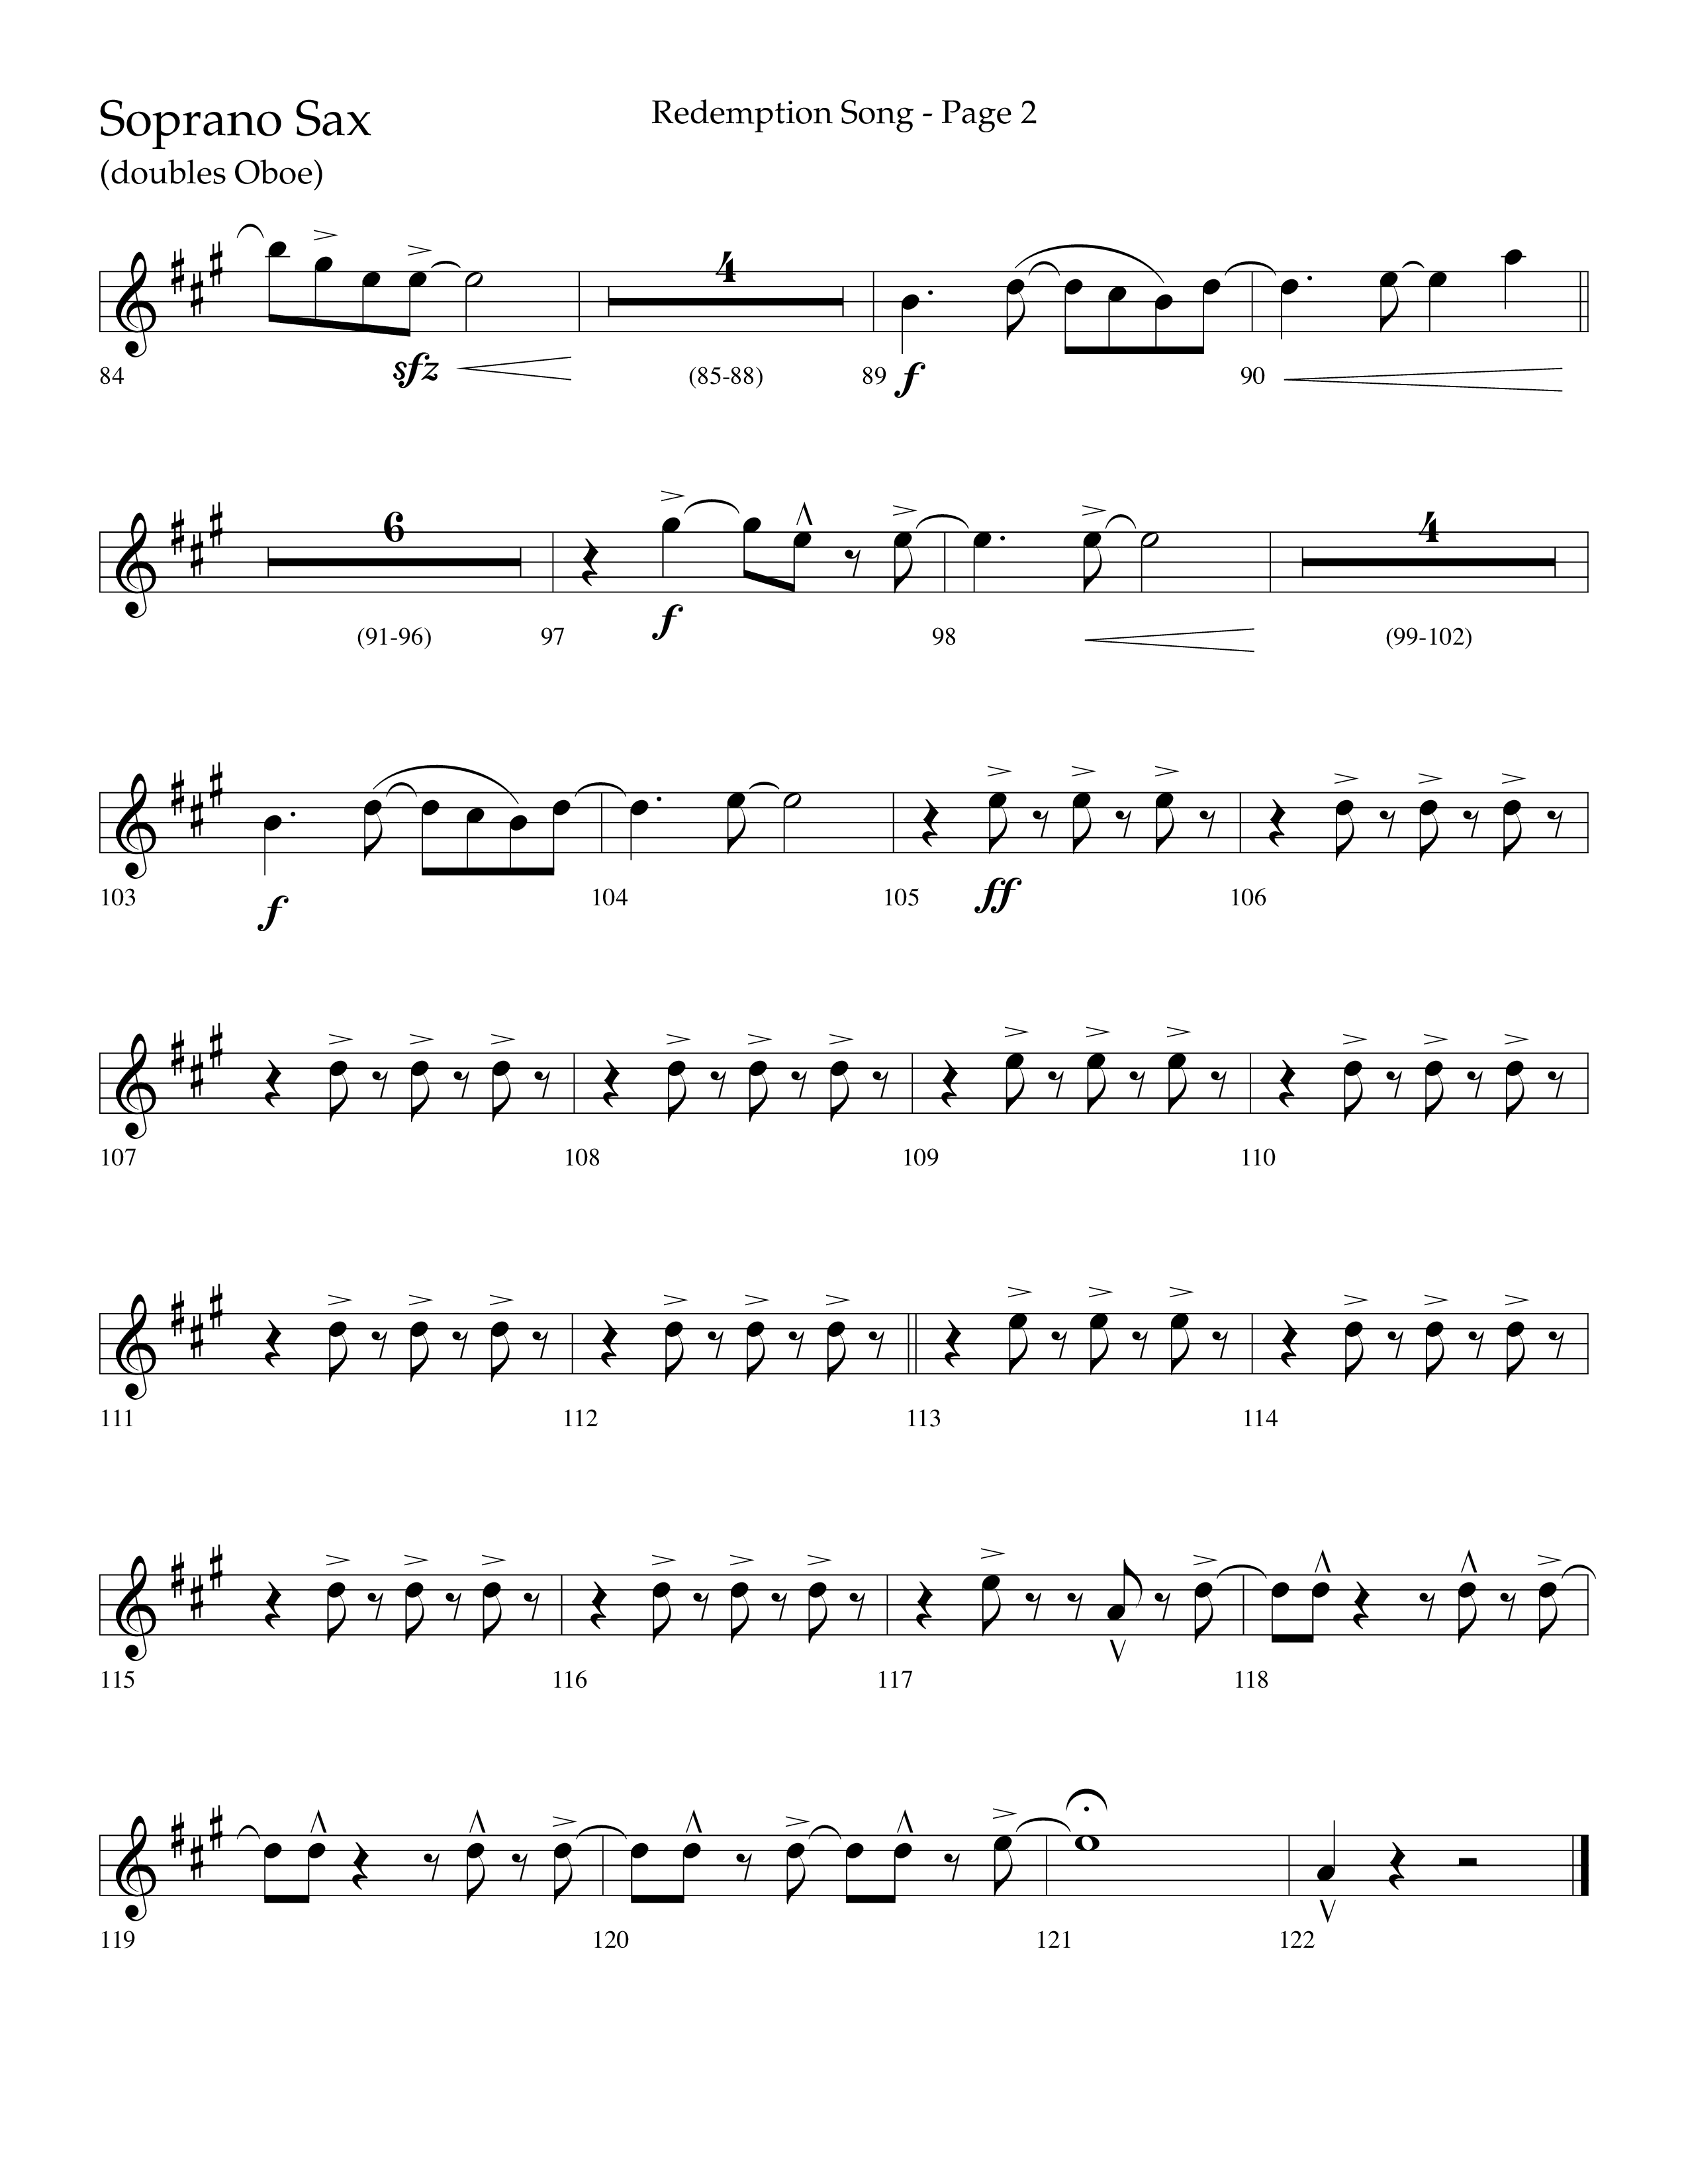 Redemption Song (Choral Anthem SATB) Soprano Sax (Lifeway Choral / Arr. Cliff Duren)